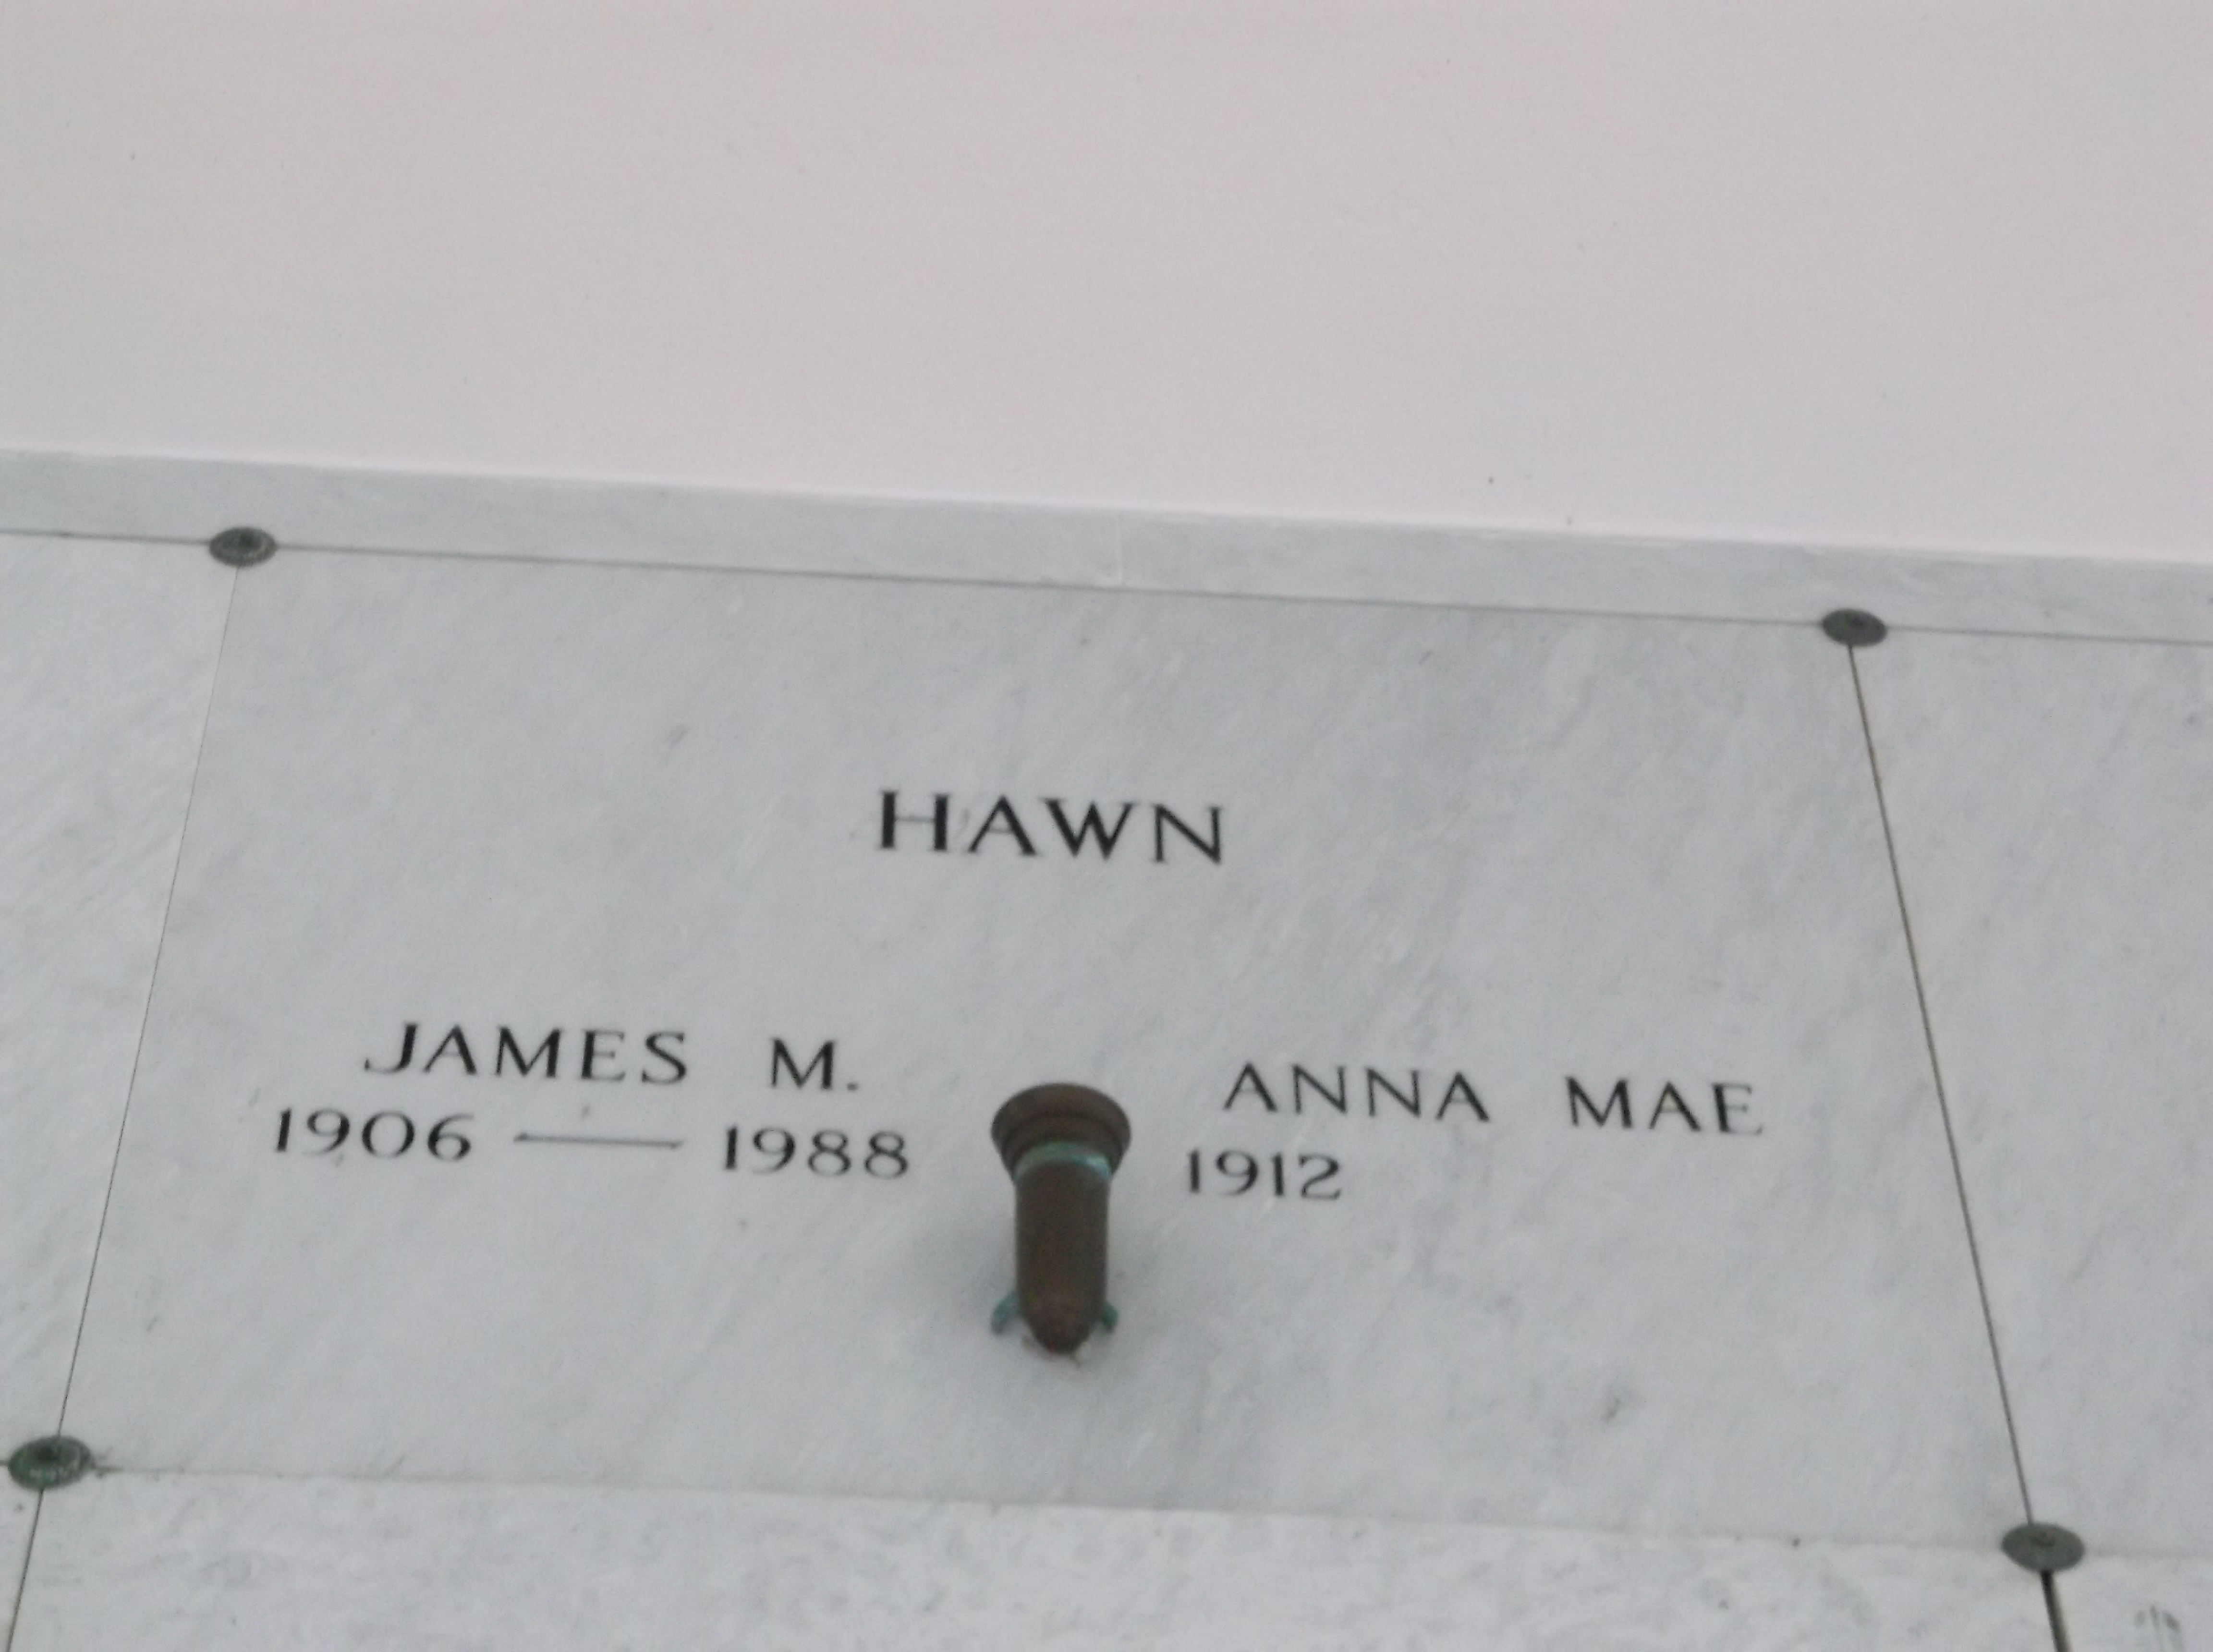 Anna Mae Hawn